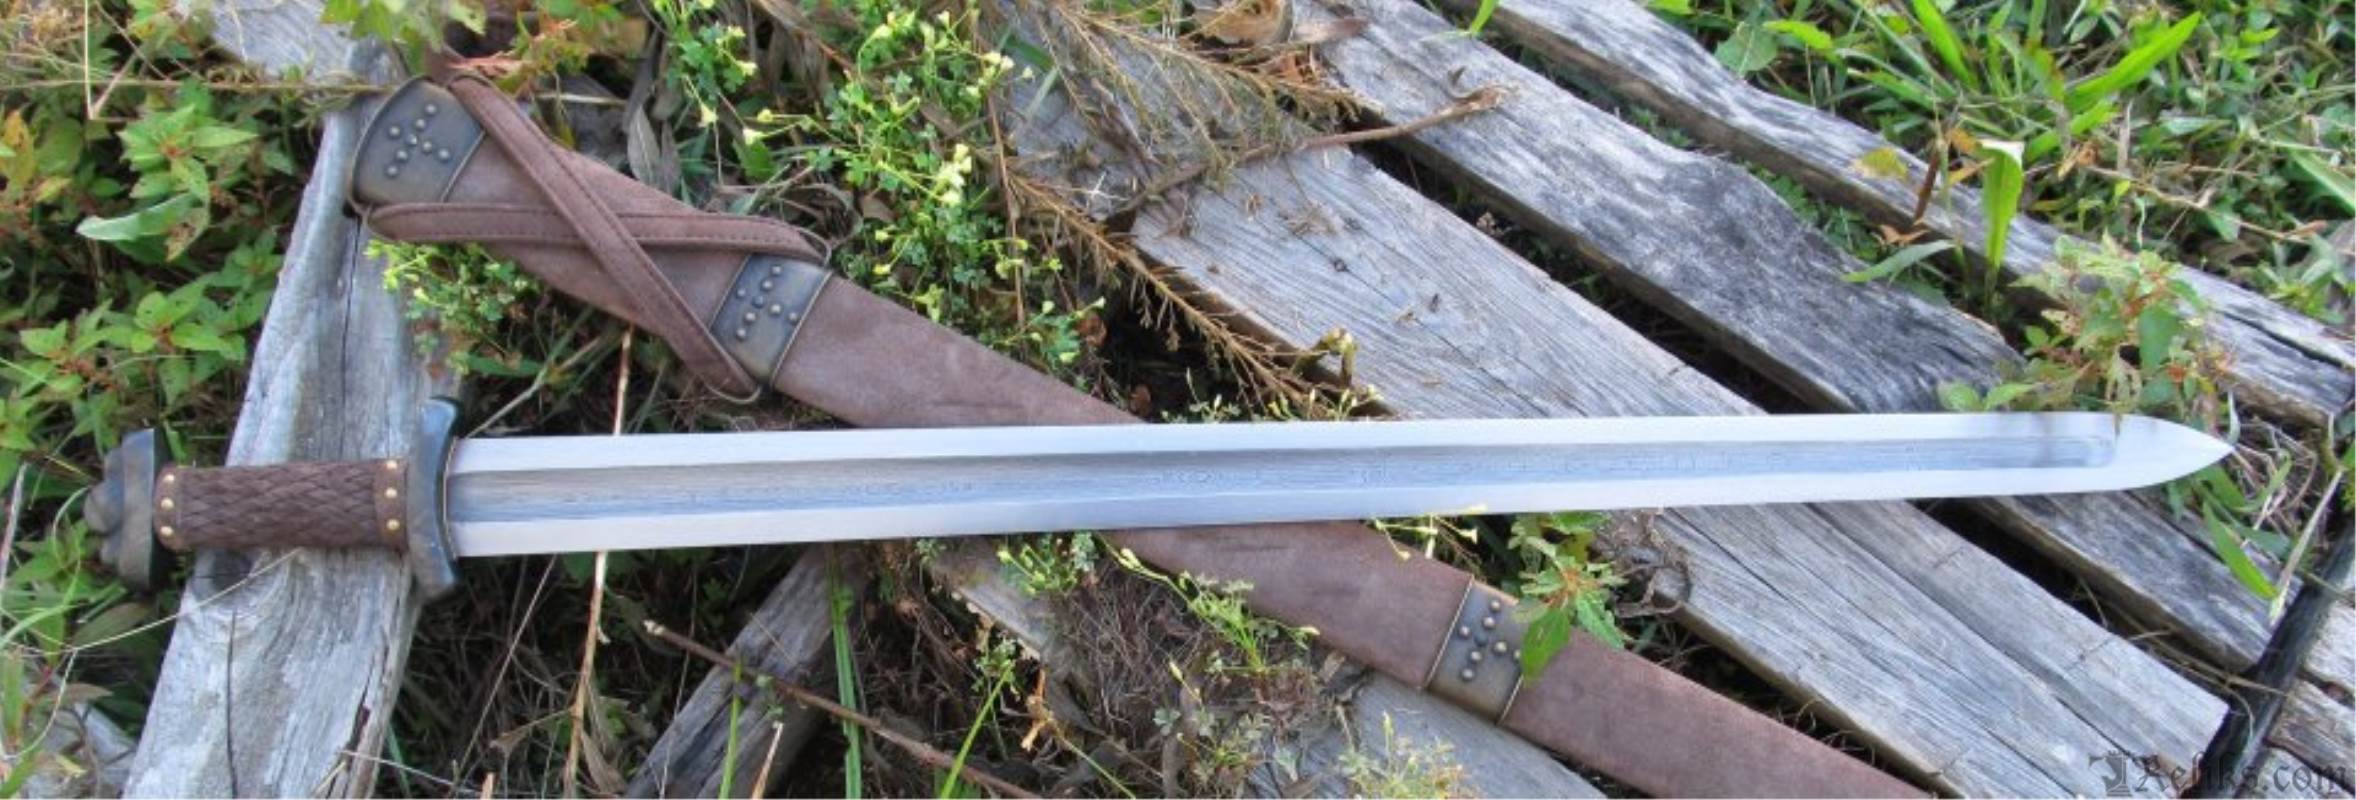 godfred viking sword